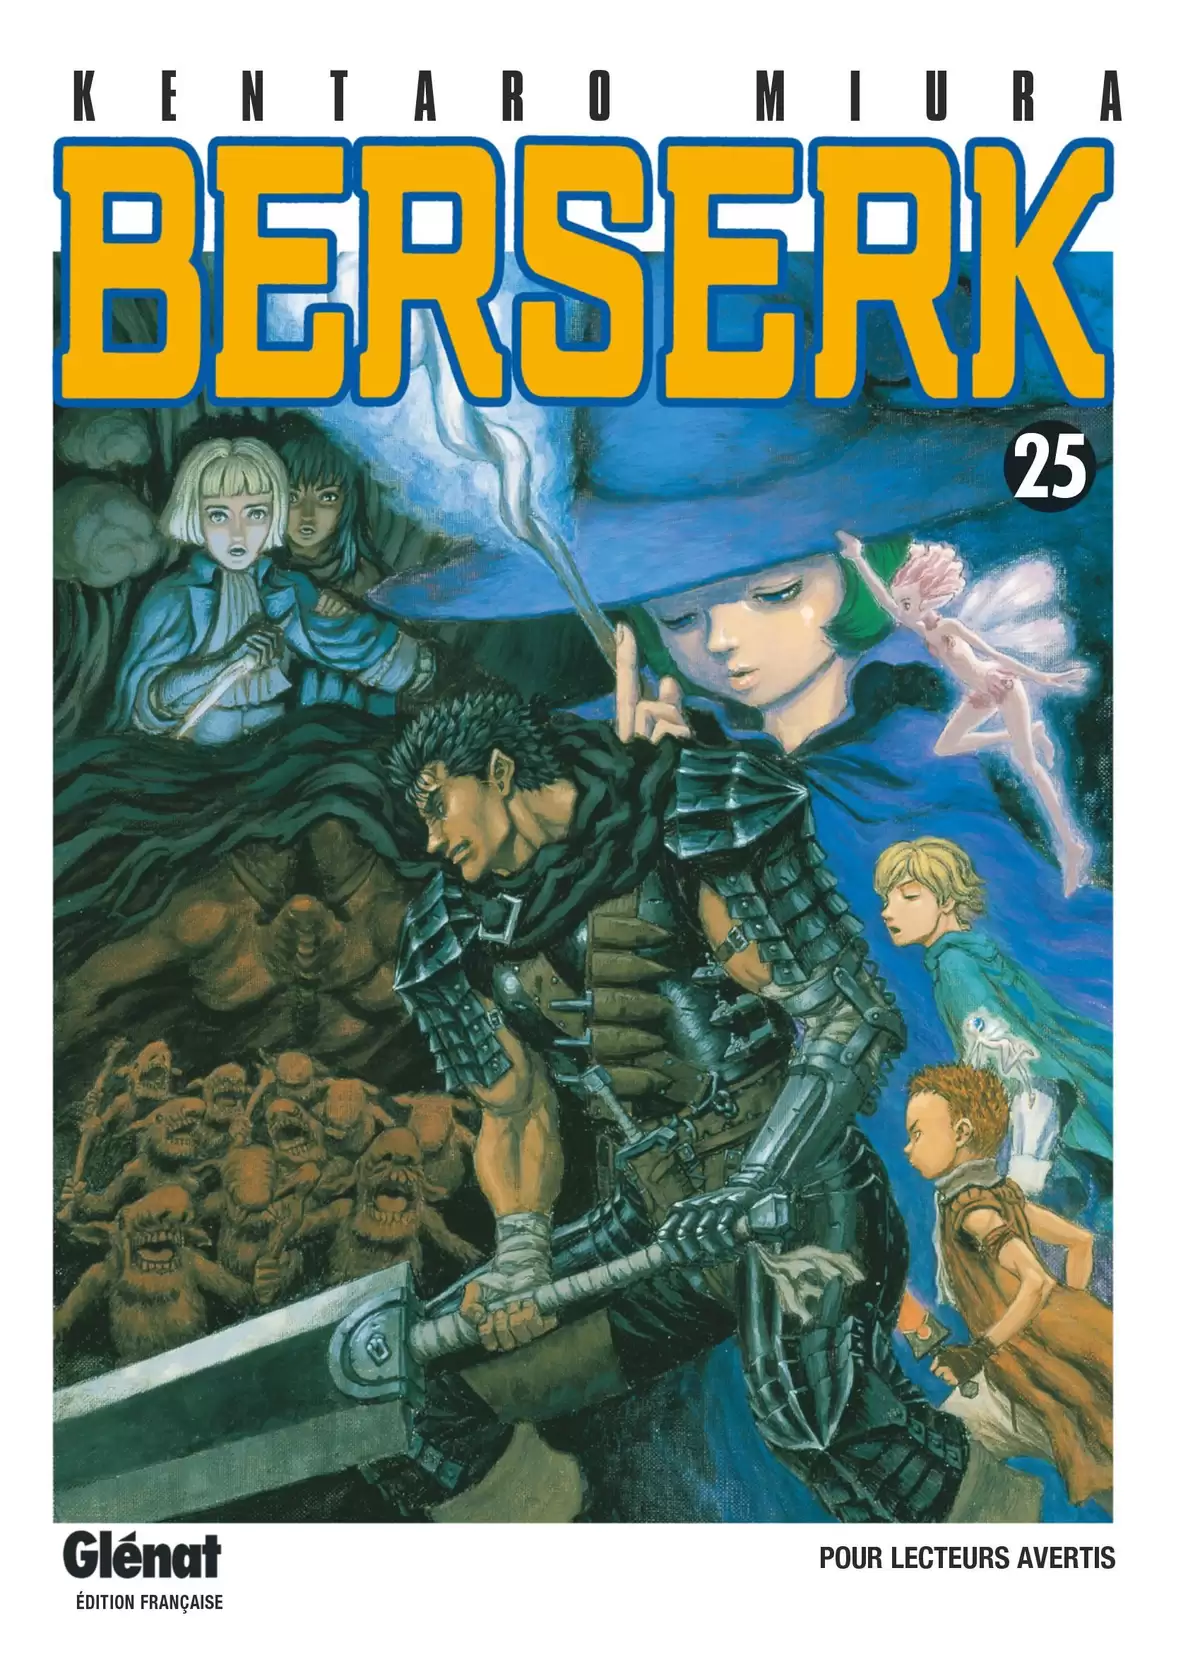 Berserk Volume 25 page 1